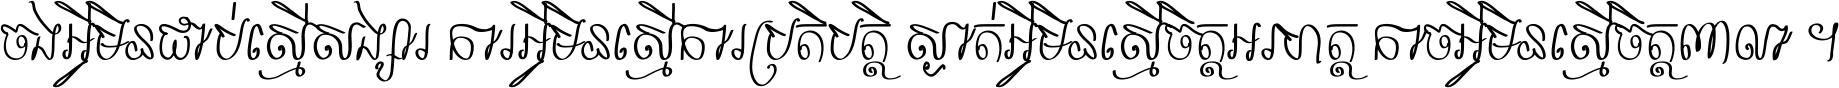 ASvadek Khmer Calligraphy